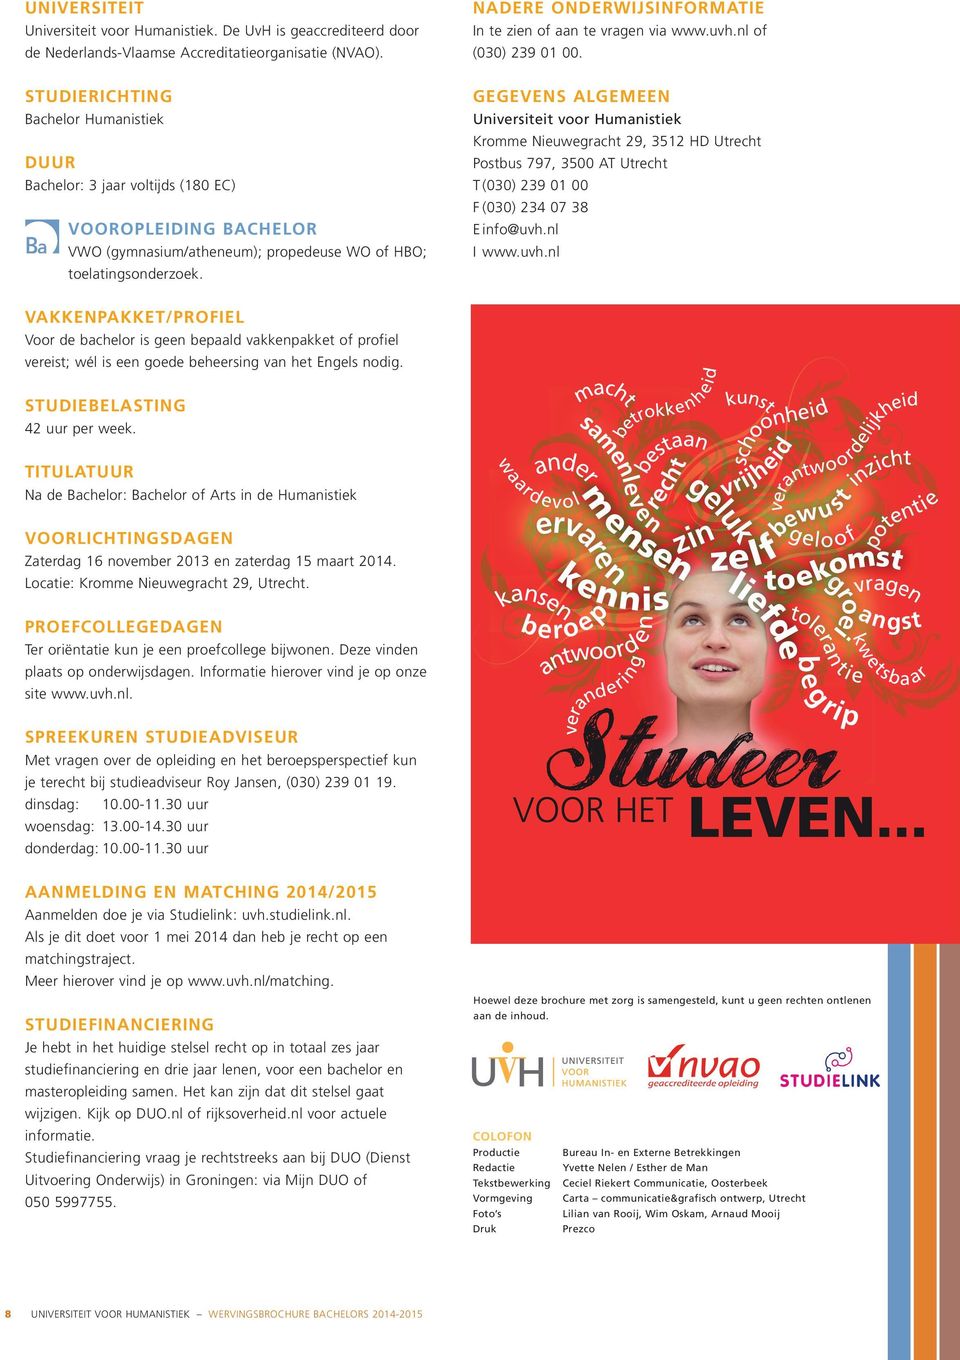 NADERE ONDERWIJSINFORMATIE In te zien of aan te vragen via www.uvh.nl of (030) 239 01 00.